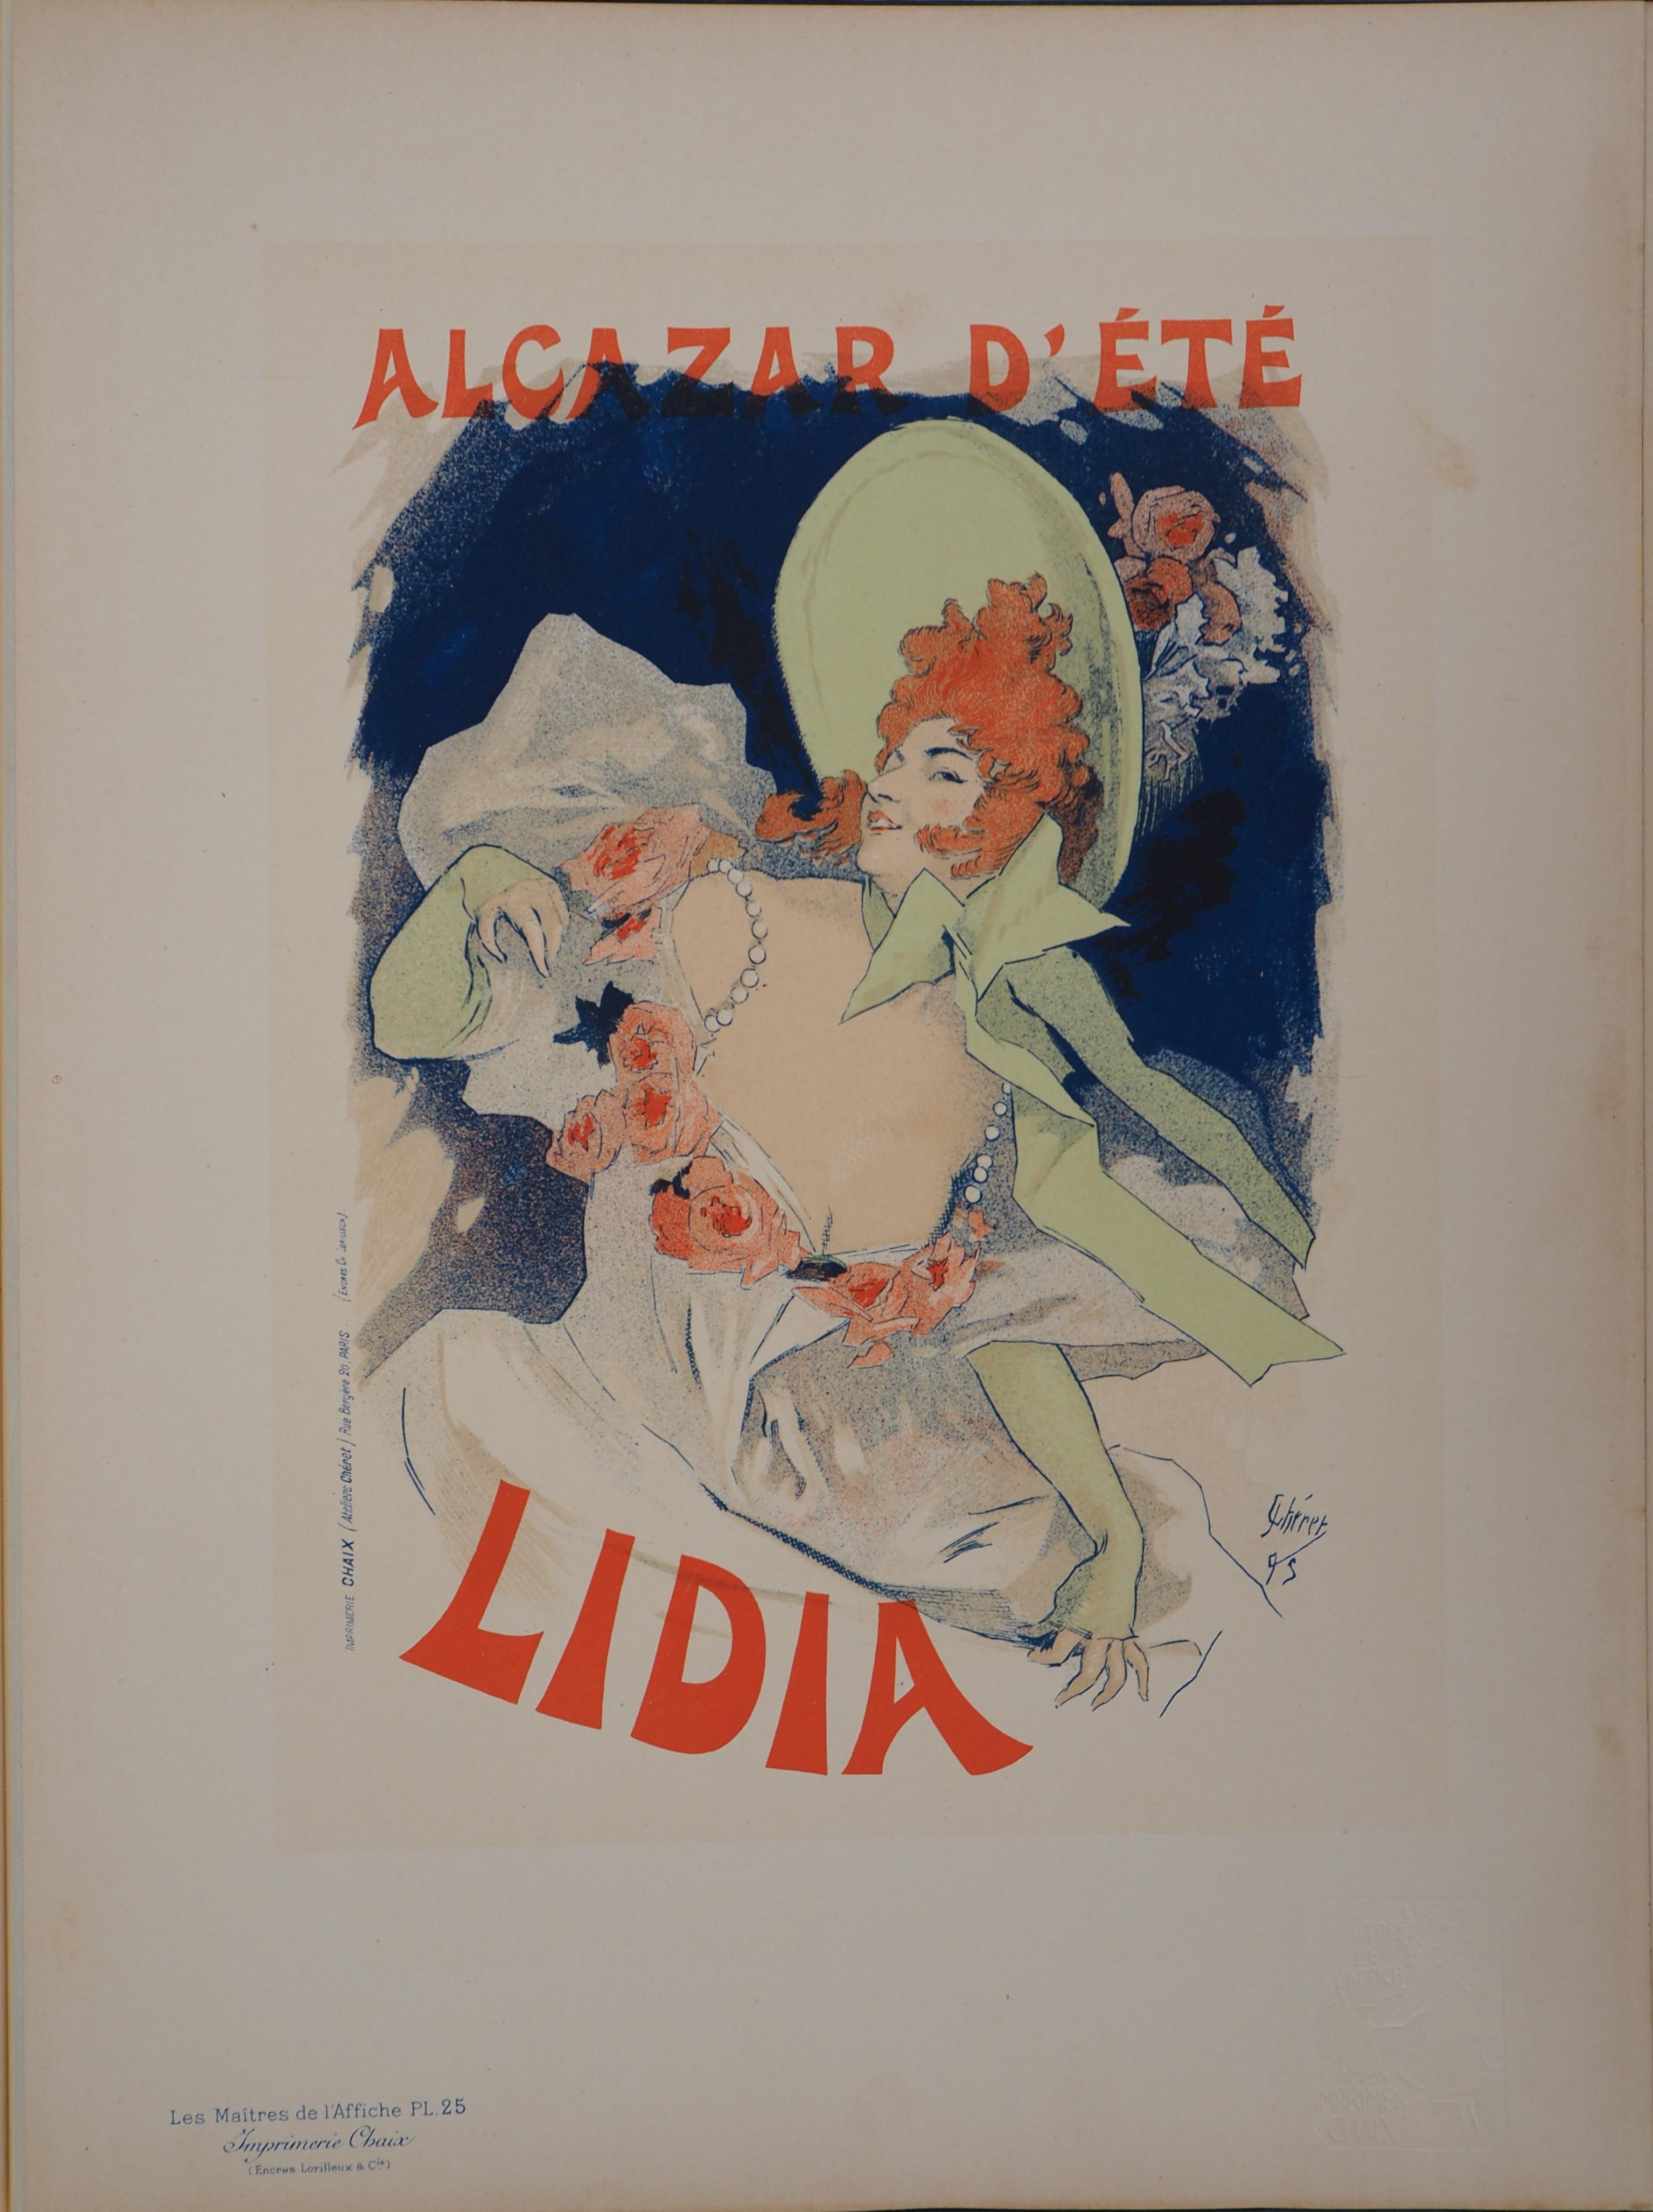 Lithographie „Les Matres de l'Affiche“ – Lithographie der Lidia, 1895 – Print von Jules Chéret